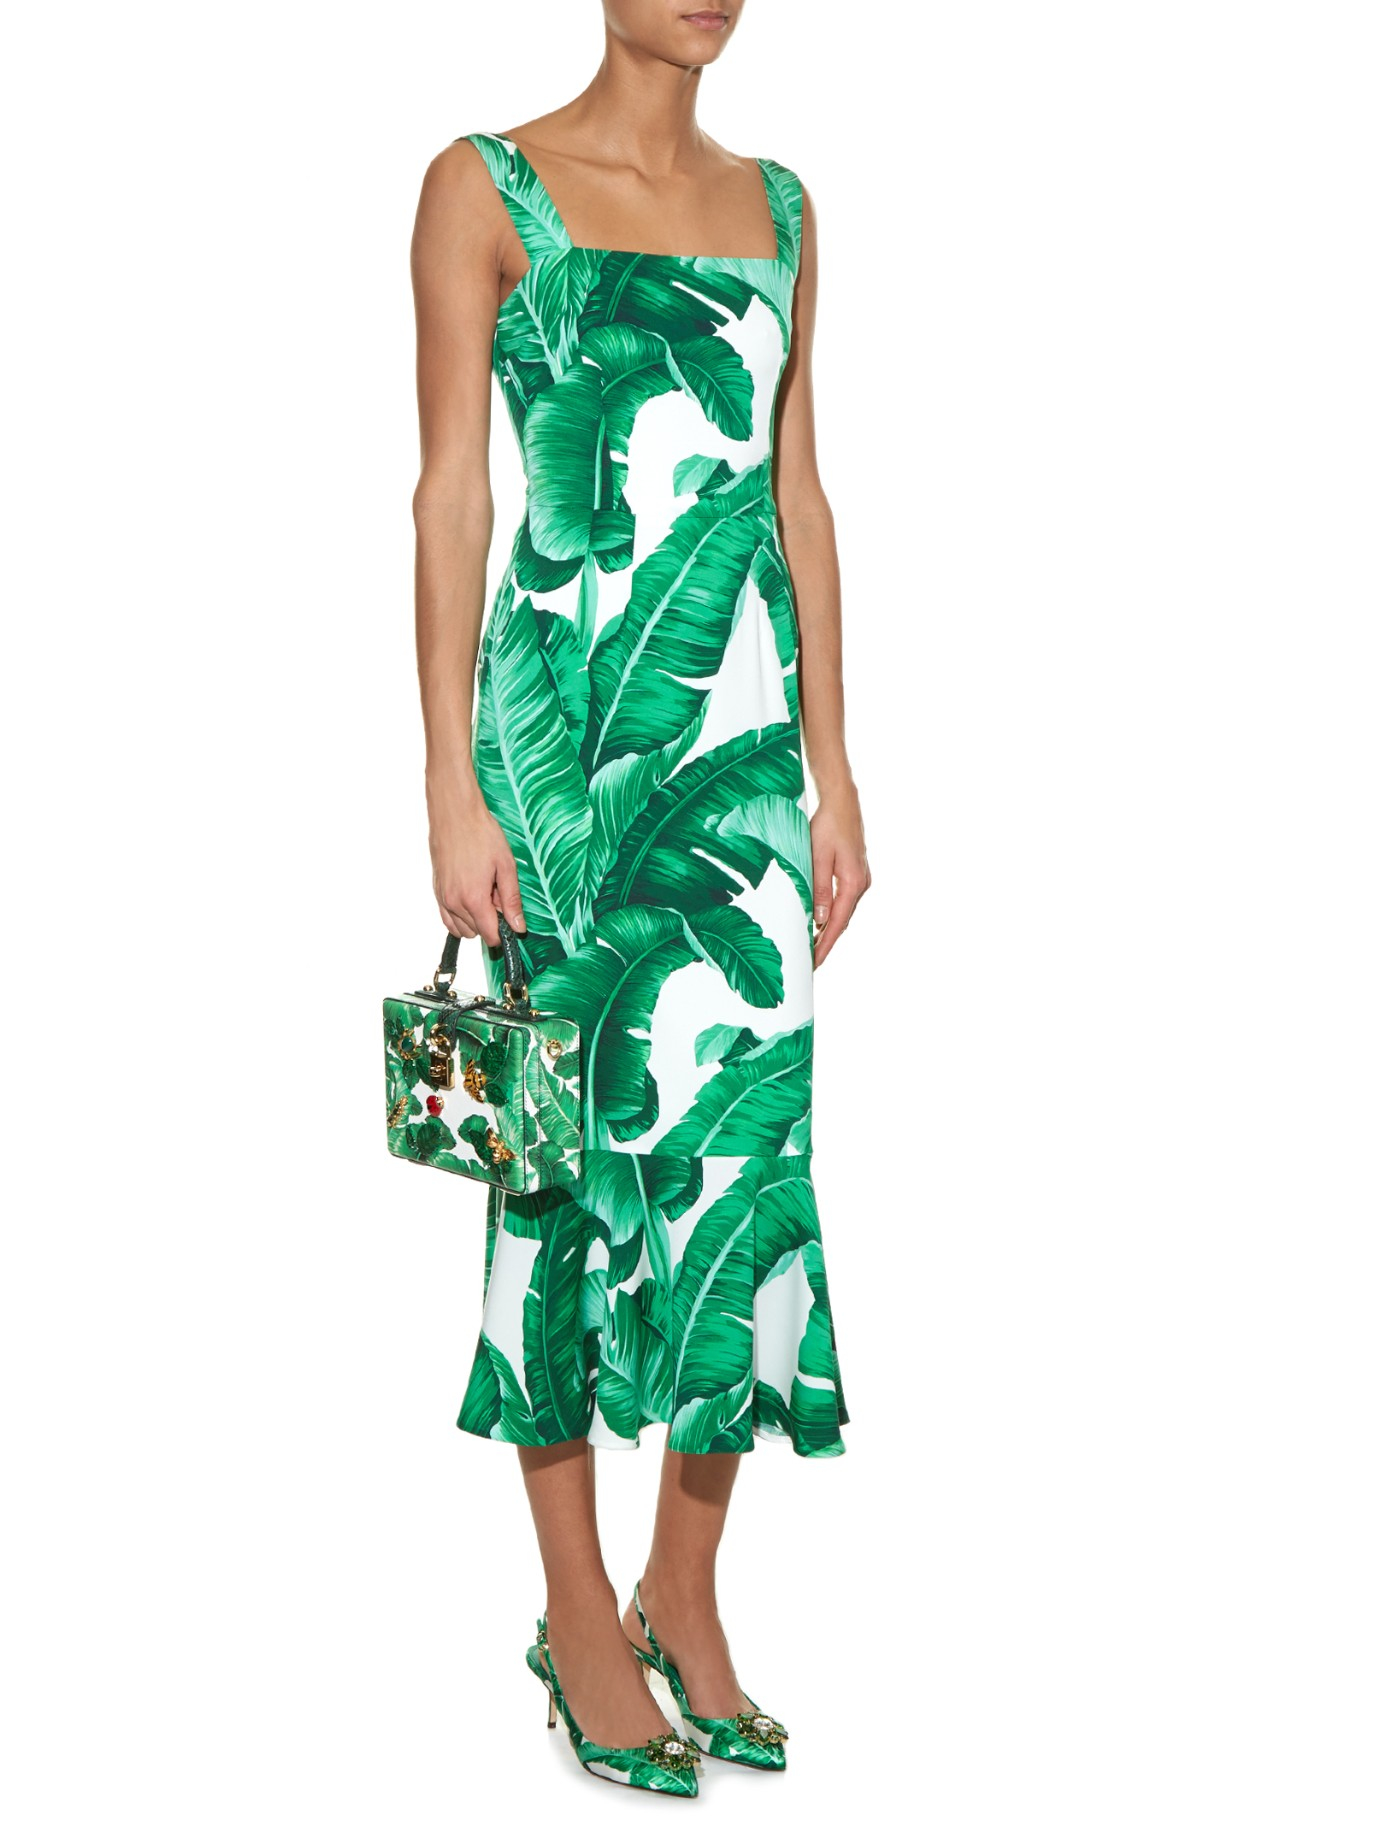 Gabbana Banana Leaf Dress Clearance ...